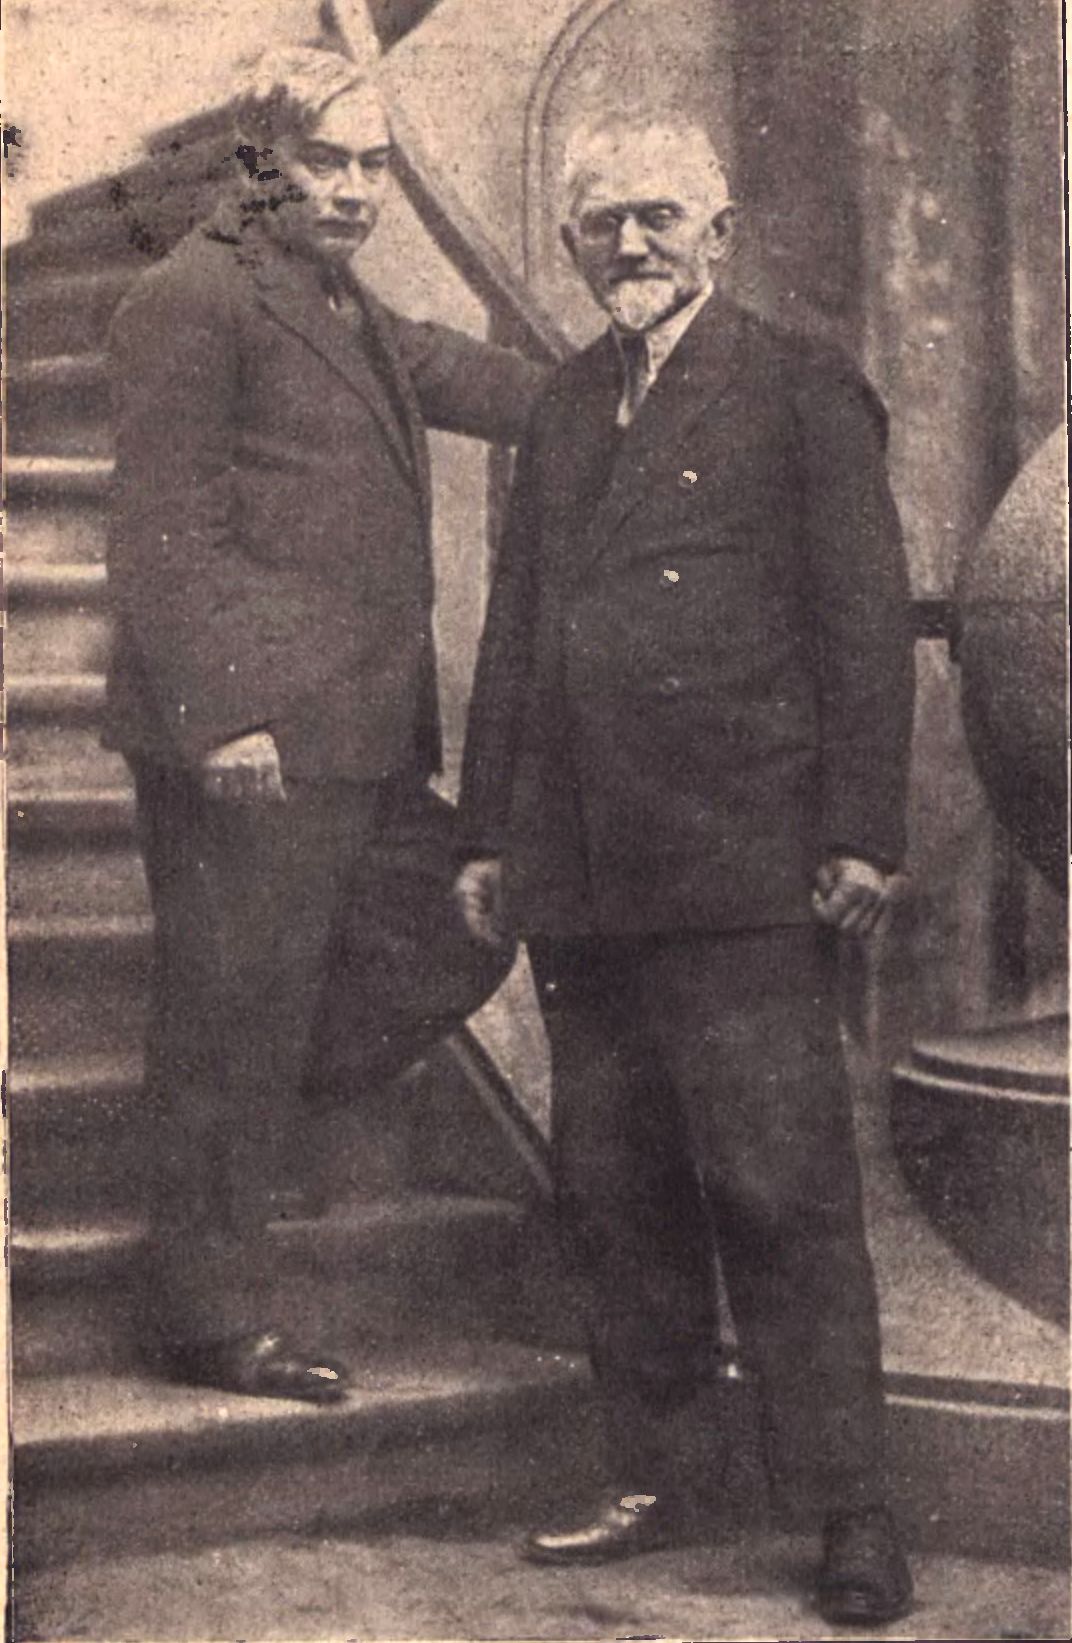 Profesorowie Wiktor Gosieniecki (na schodach) i Jan Jerzy Wroniecki